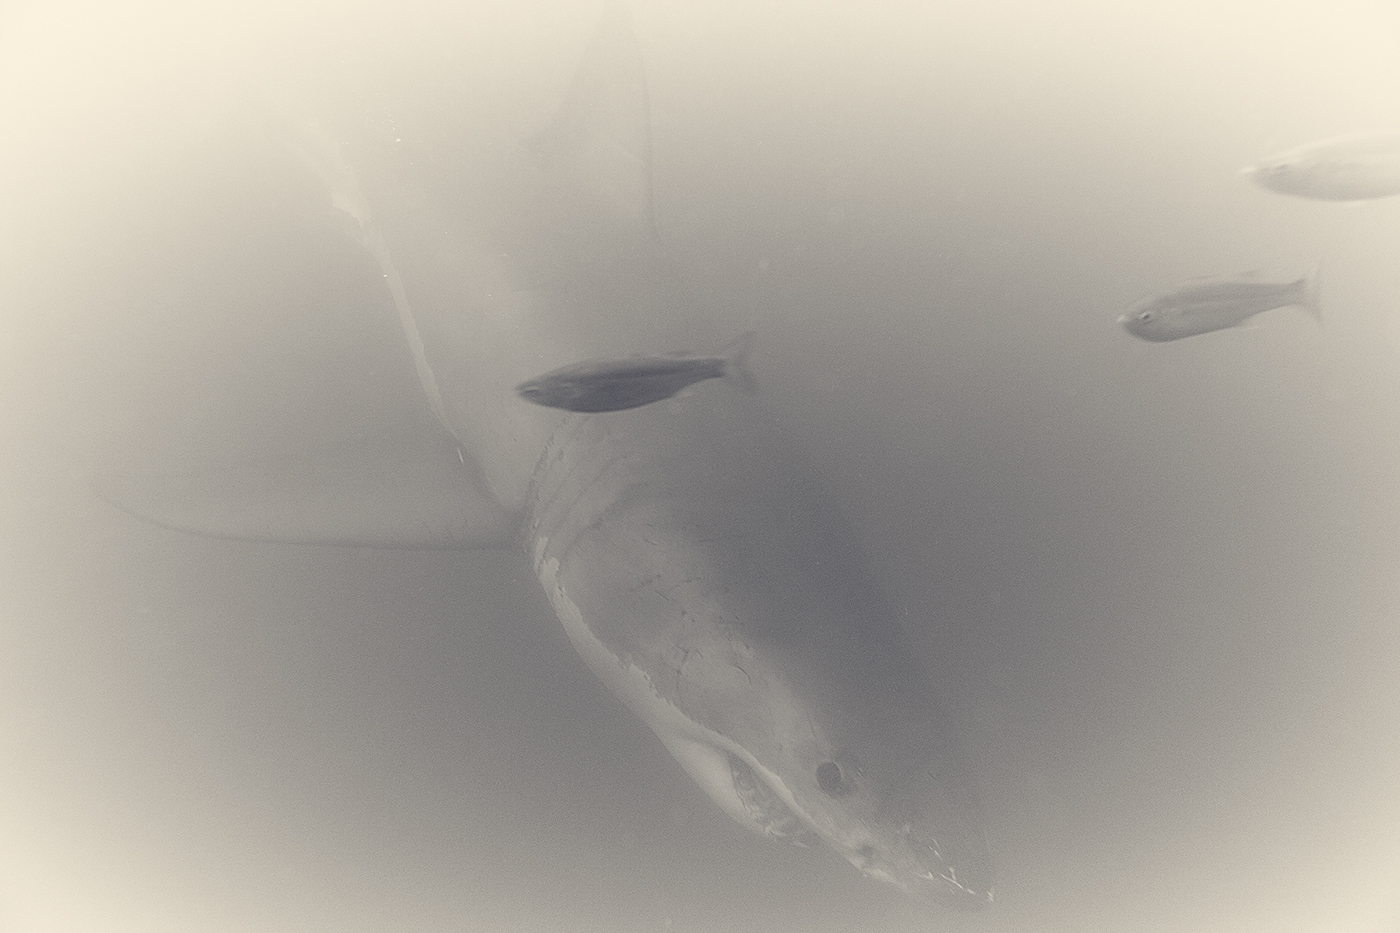 underwater black and white wildlife shark great white shark south africa predator FINEART